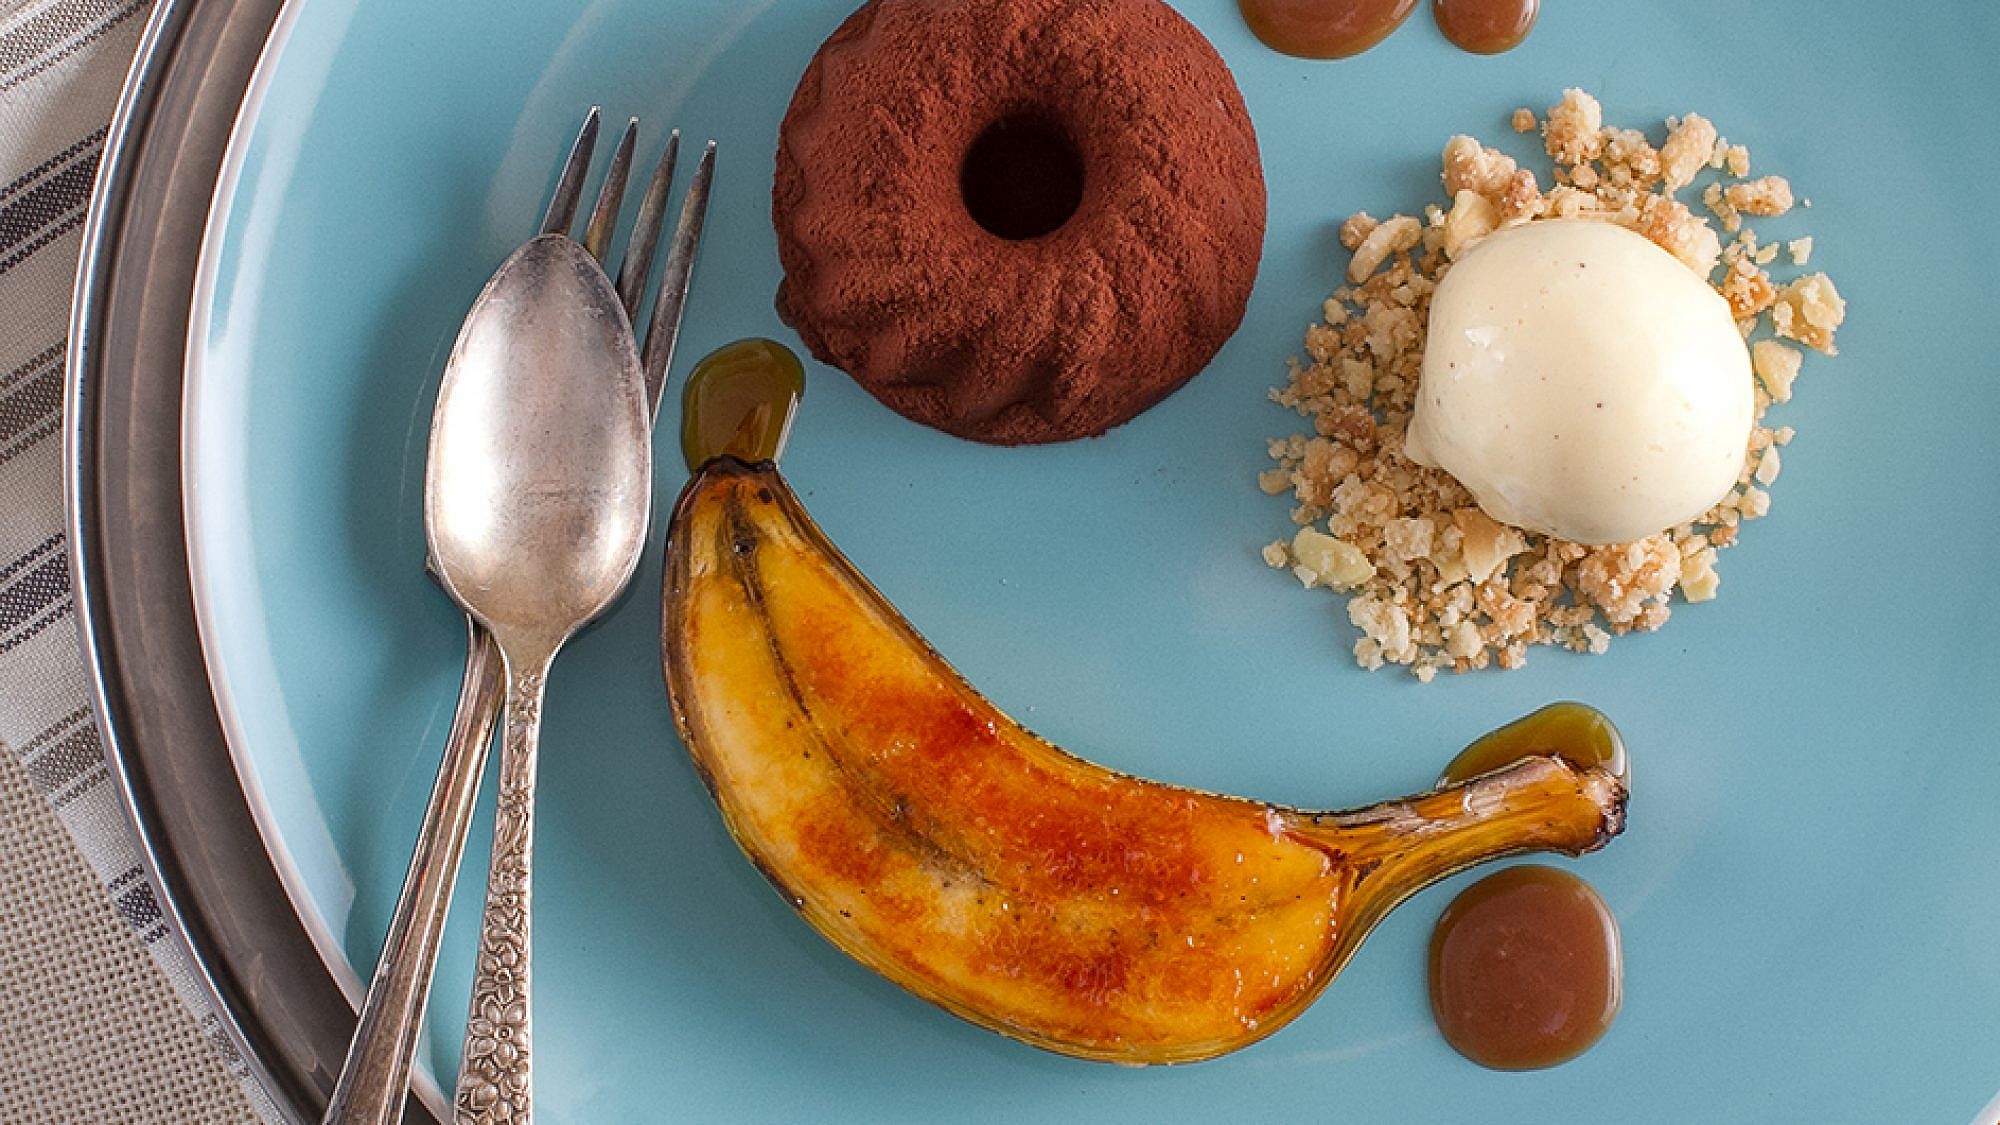 מרקיז שוקולד עם שטרויזל אגוזי לוז ובננה ברולה של שף אילן חפץ. צילום: אנטולי מיכאלו. סטיילינג: נעה קנריק